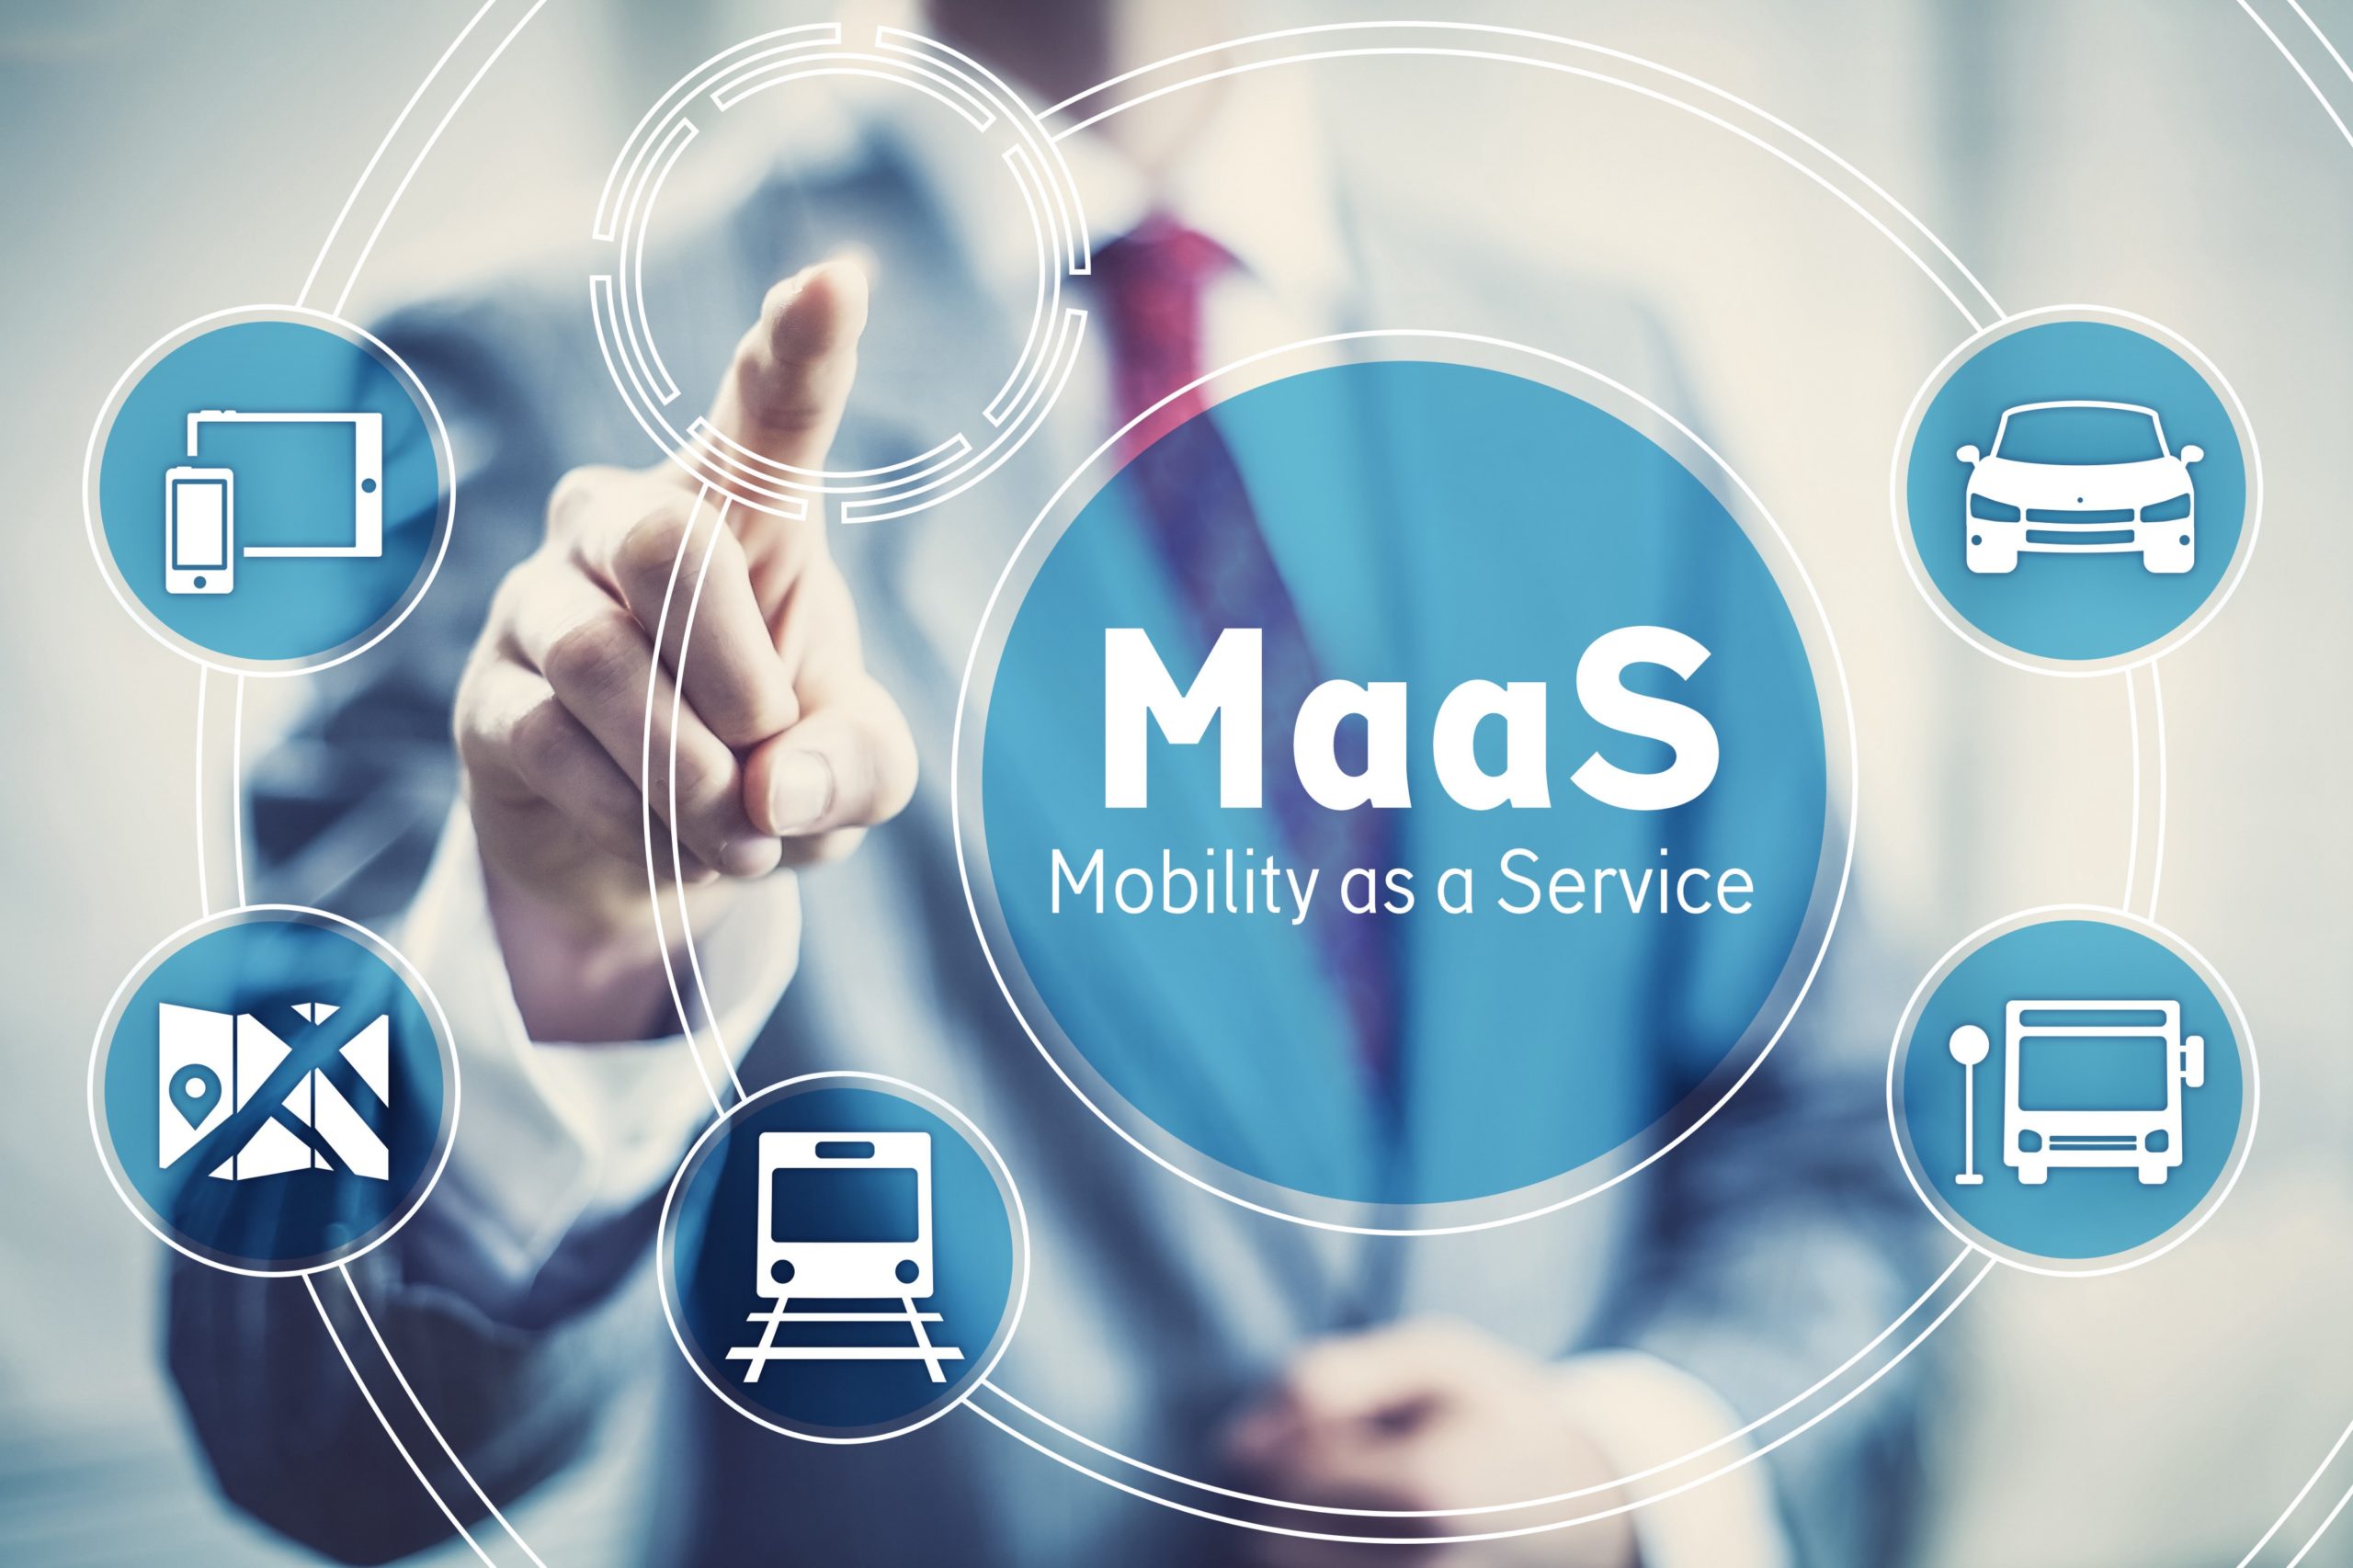 Les déplacements en voiture peuvent être fortement réduits grâce à des solutions alternatives telles que le MaaS.